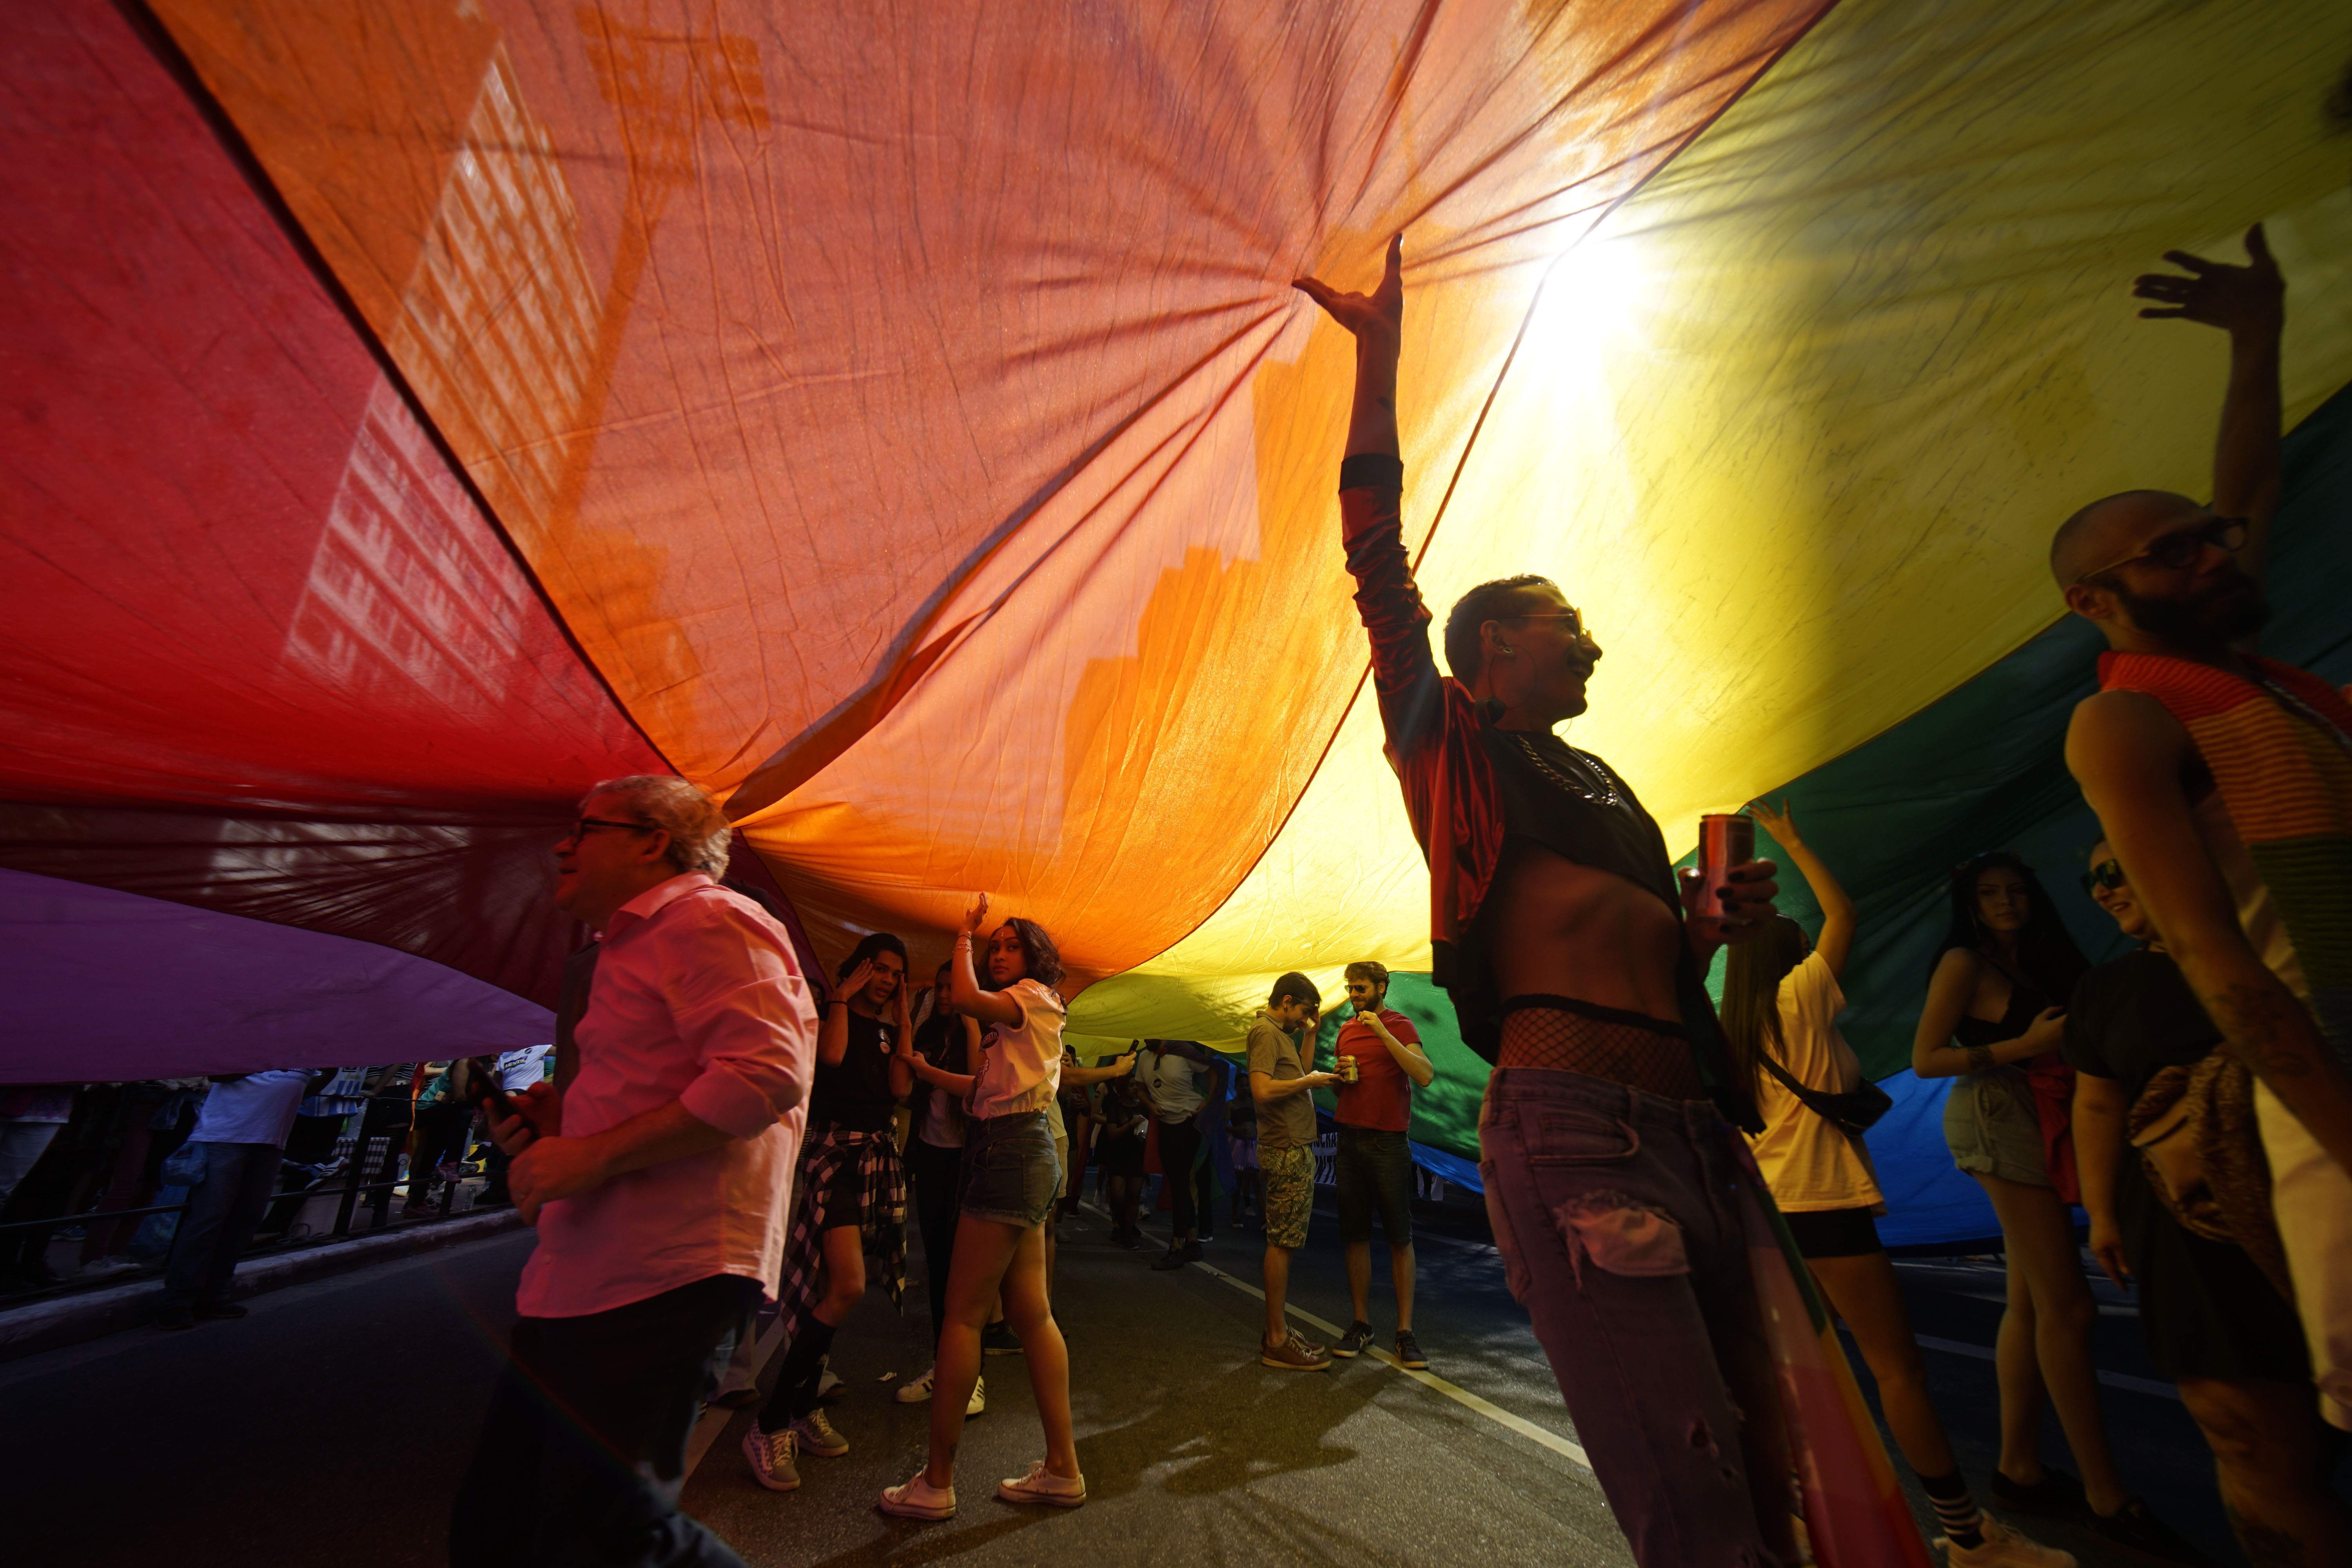 Aquest és el país més perillós per a les persones LGBTIQ+, segons un informe